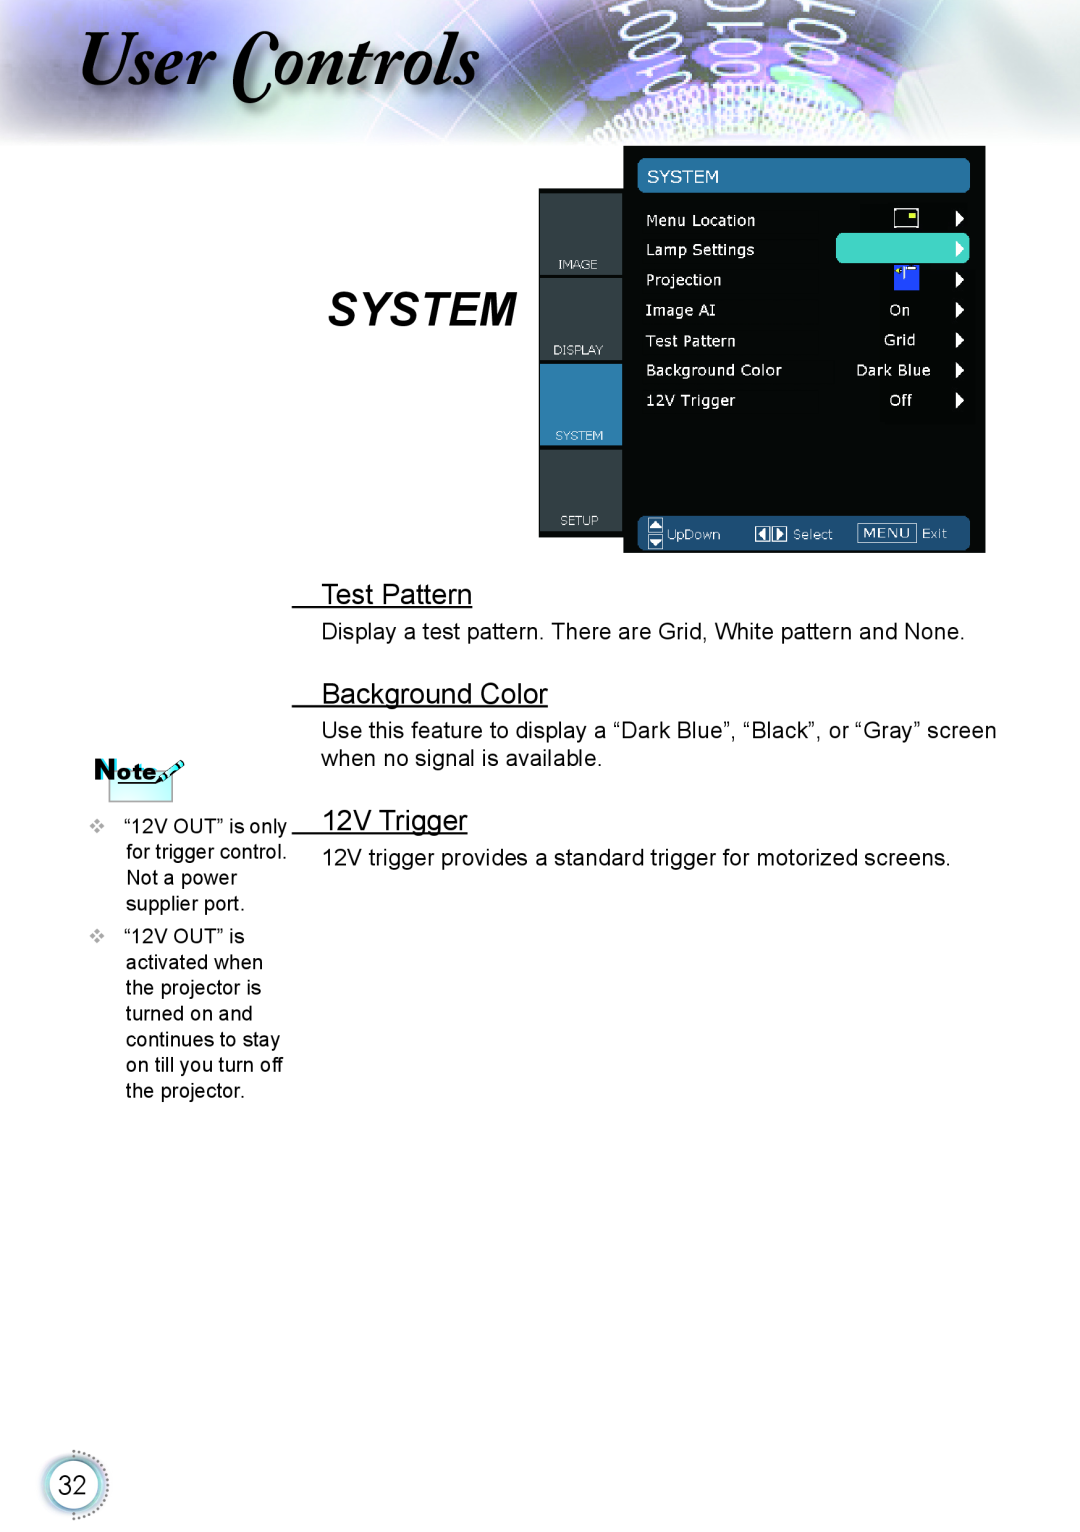 Optoma Technology HD20 manual Test Pattern, Background Color, 12V Trigger, ser ontrols, System 